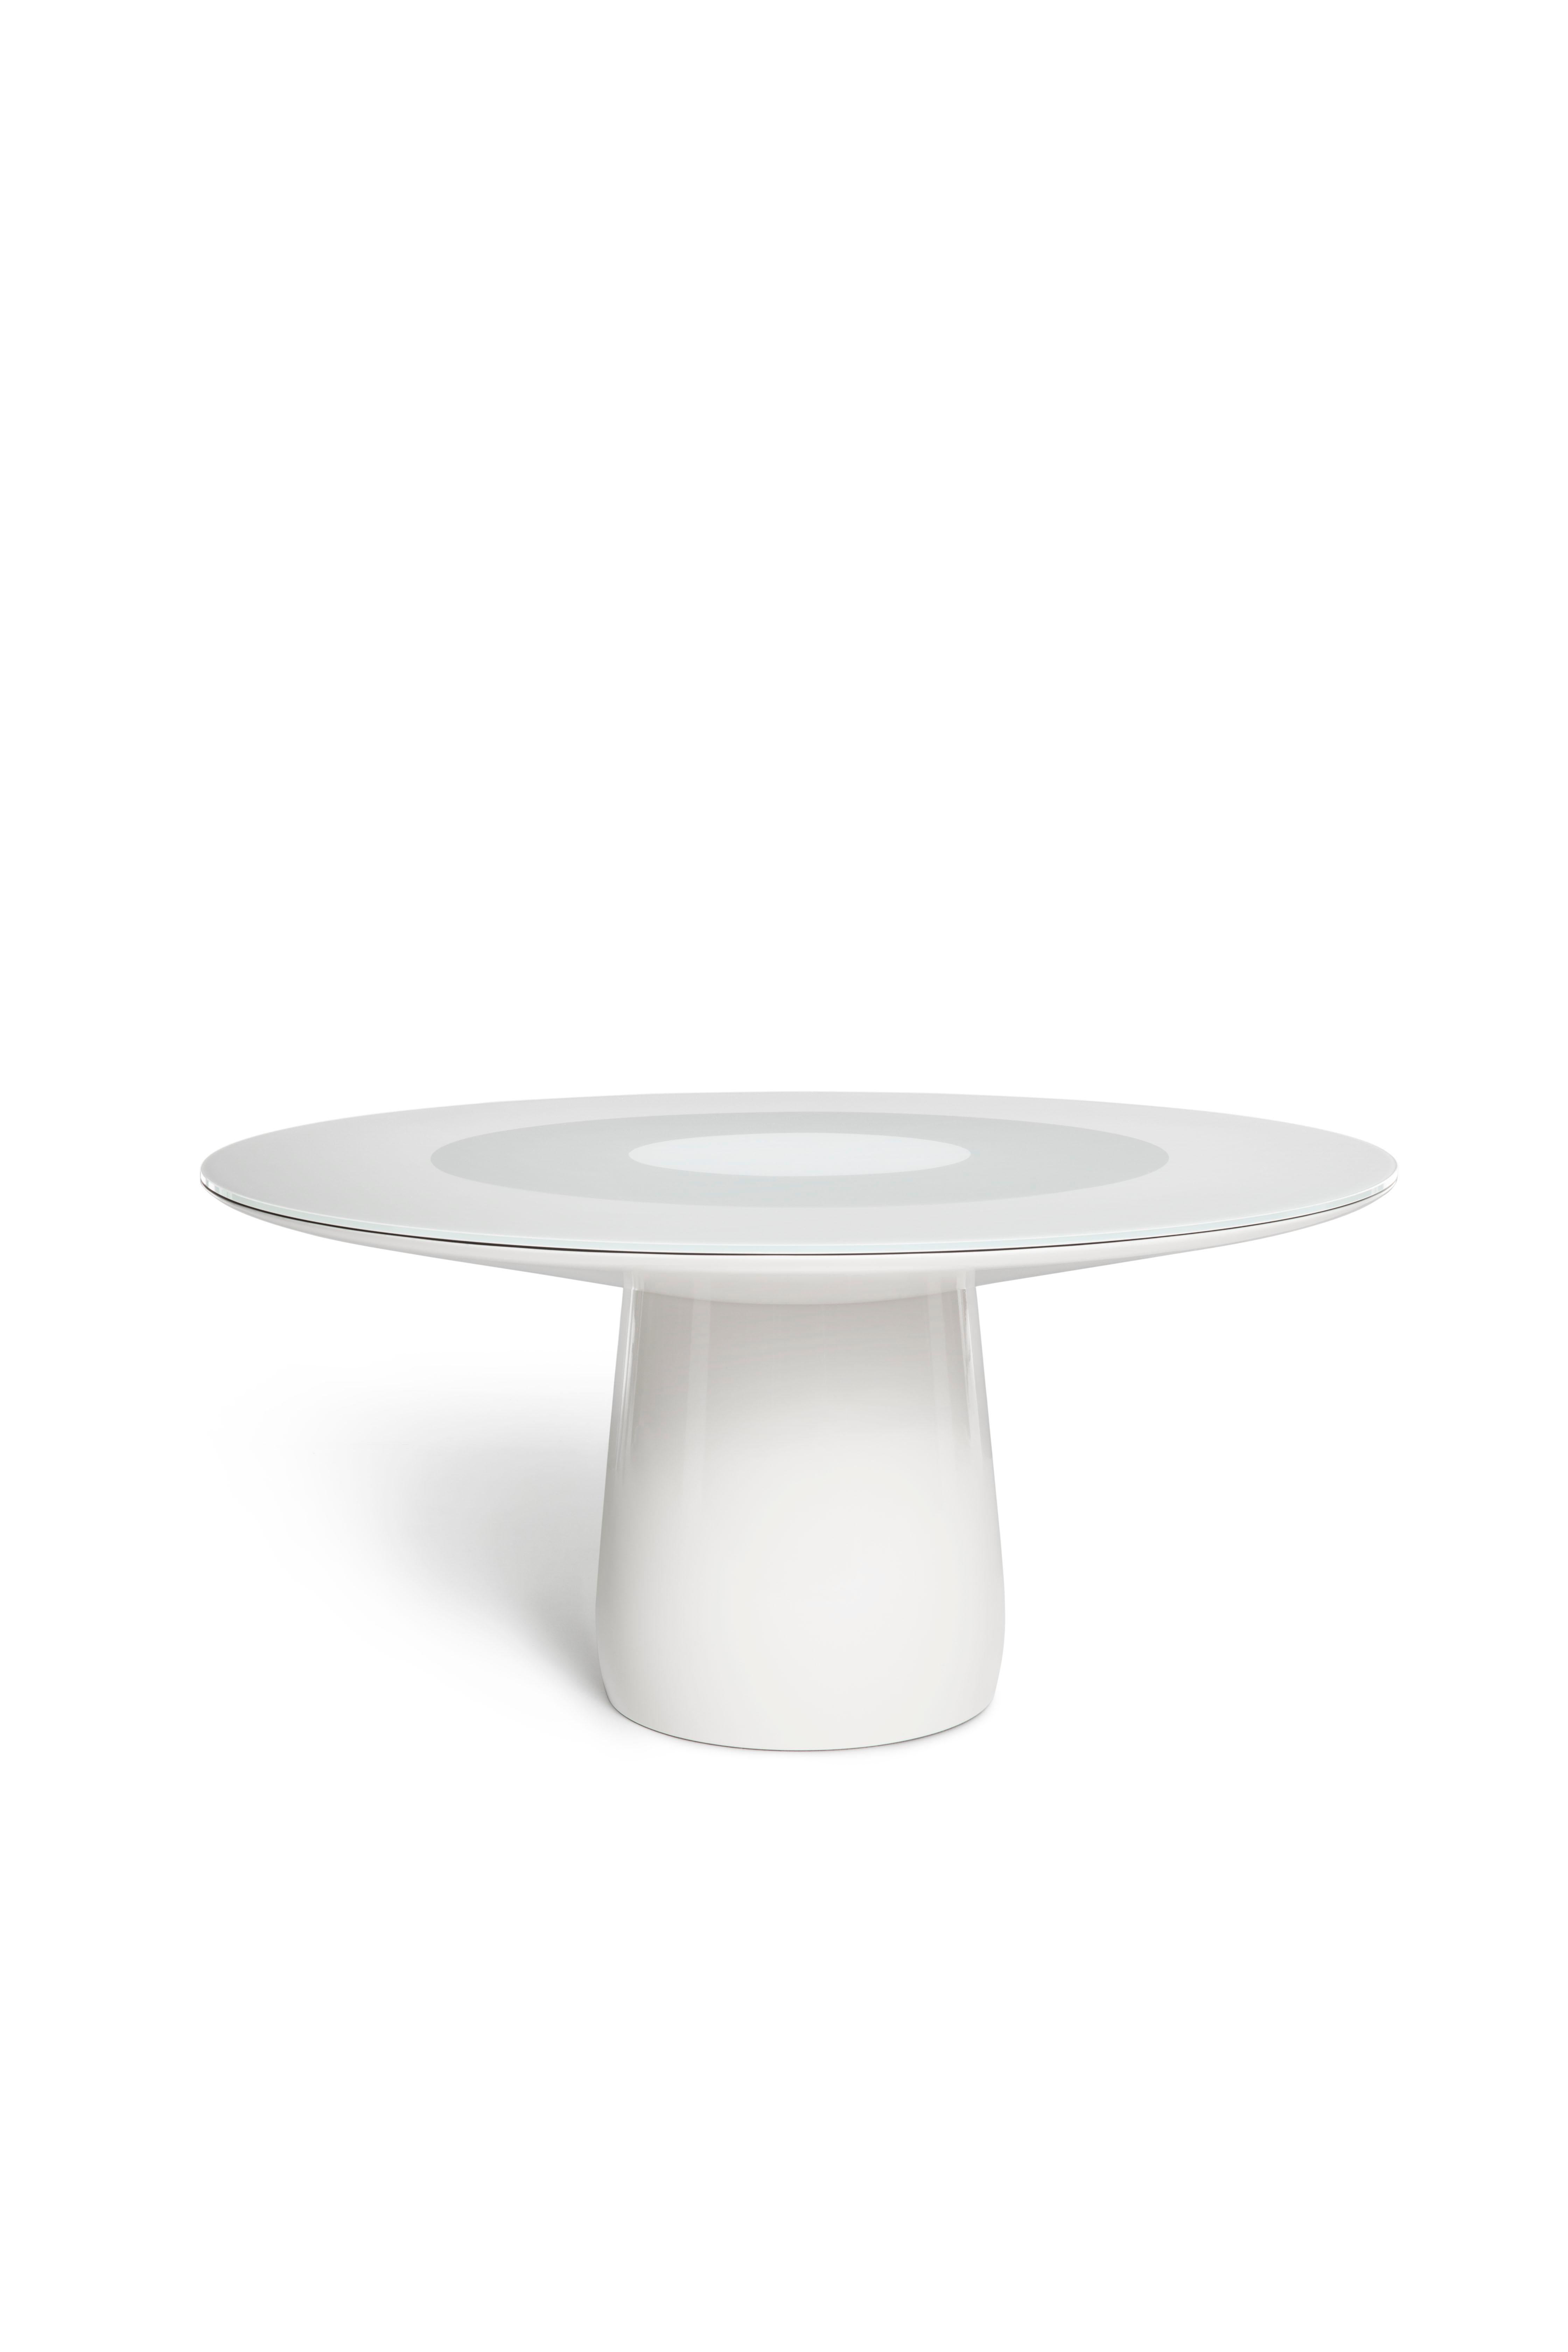 Der Roundel-Tisch zelebriert kreisförmige Formen auf verschiedene Weise, unter anderem durch die Form der Platte und die drei verschiedenen Scheiben, in die er unterteilt ist. Mit seinen hochgradig skulpturalen Qualitäten wirkt Roundel fast wie ein